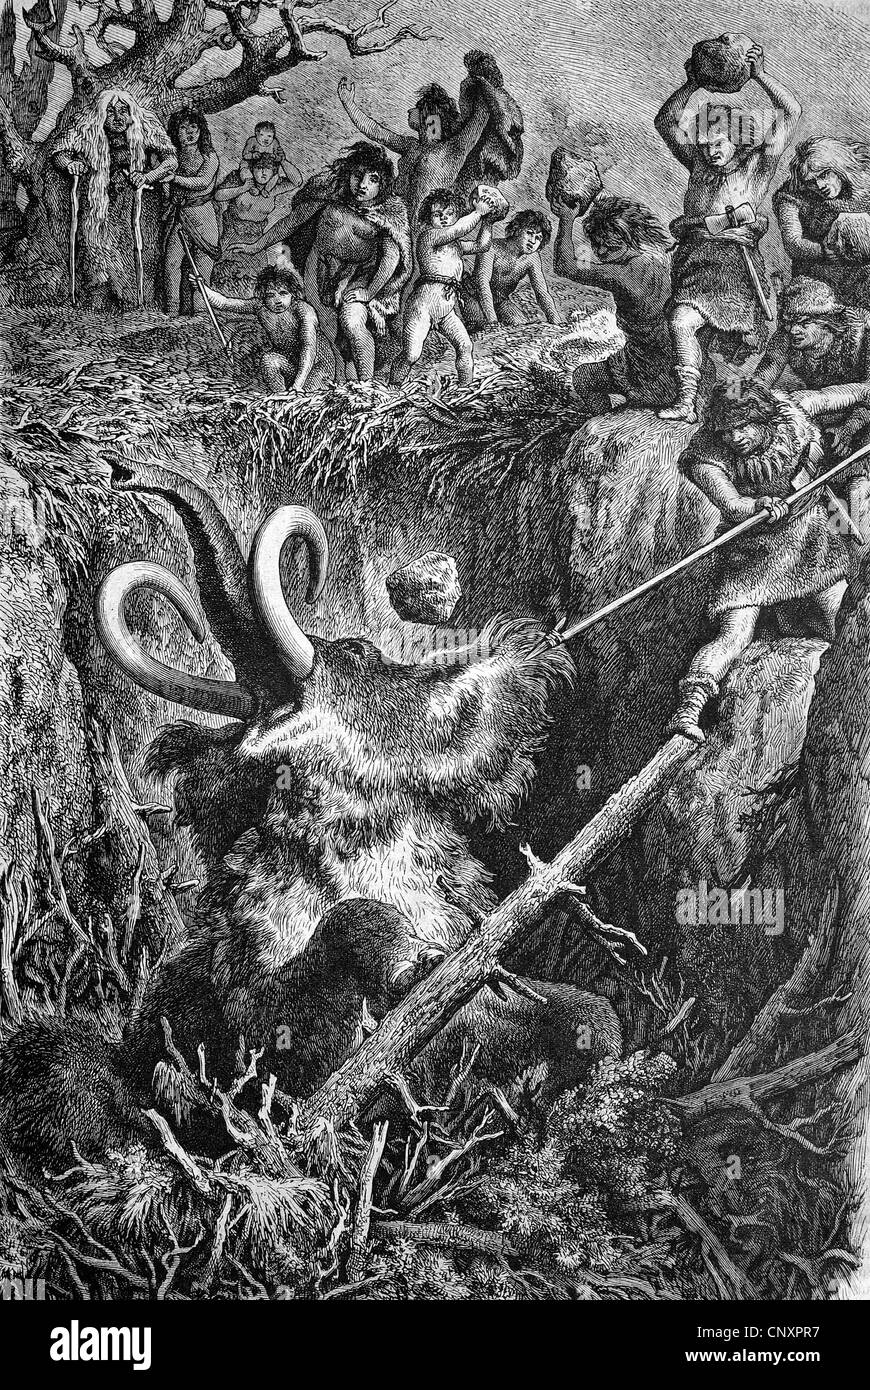 Unione cavemen di caccia un mammut, incisione storica del 1883 Foto Stock